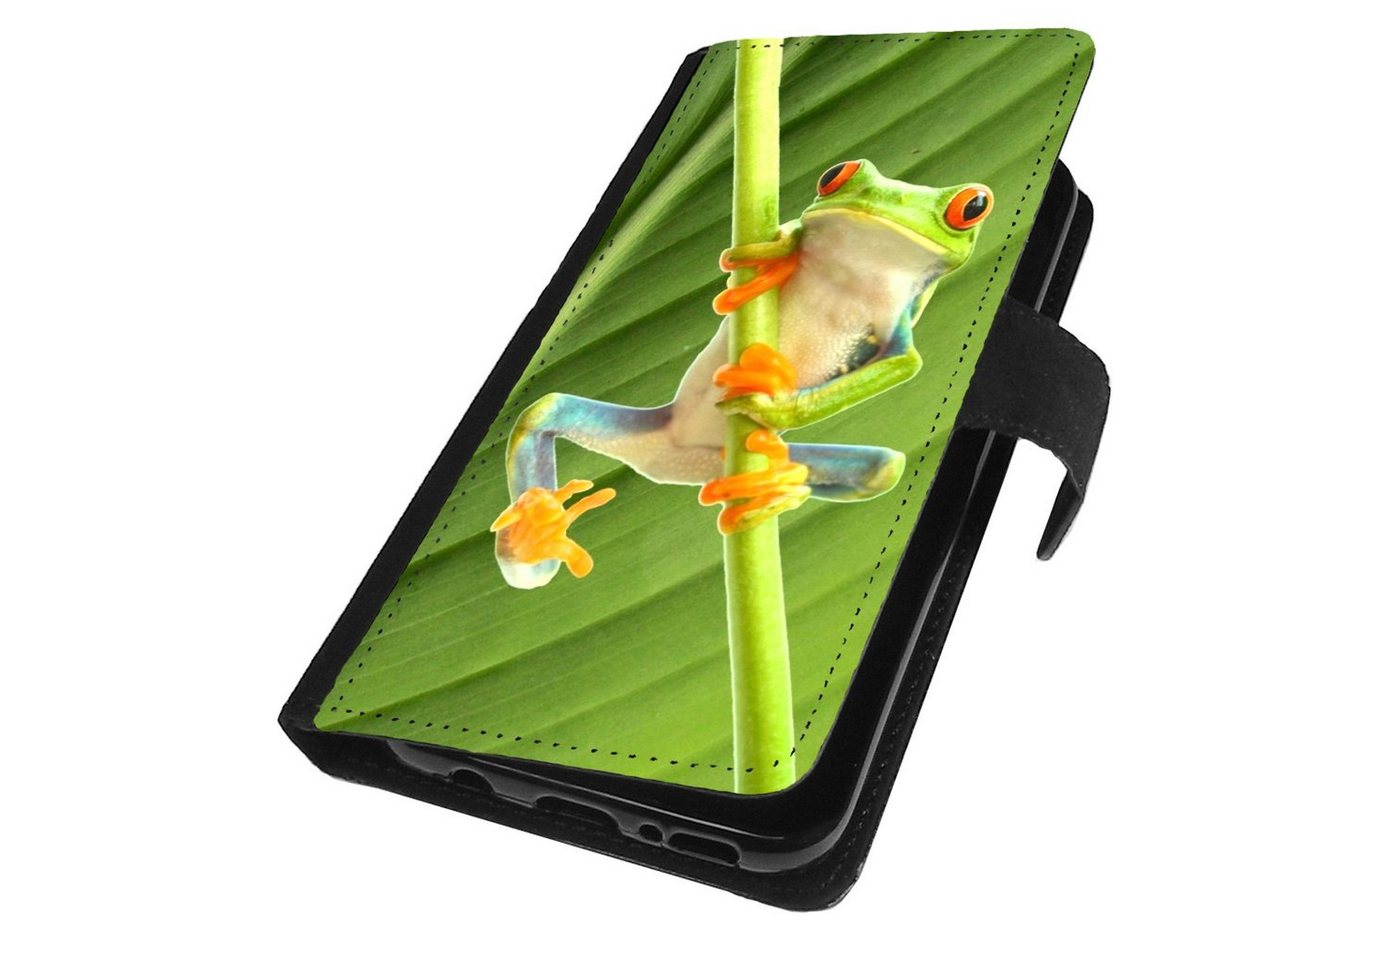 Traumhuelle Handyhülle MOTIV 268 Frosch Grün Handy Cover Hülle für Samsung Galaxy, Smartphone Hülle Handy Tasche Case Klapp Cover Wallet Schutzhülle von Traumhuelle